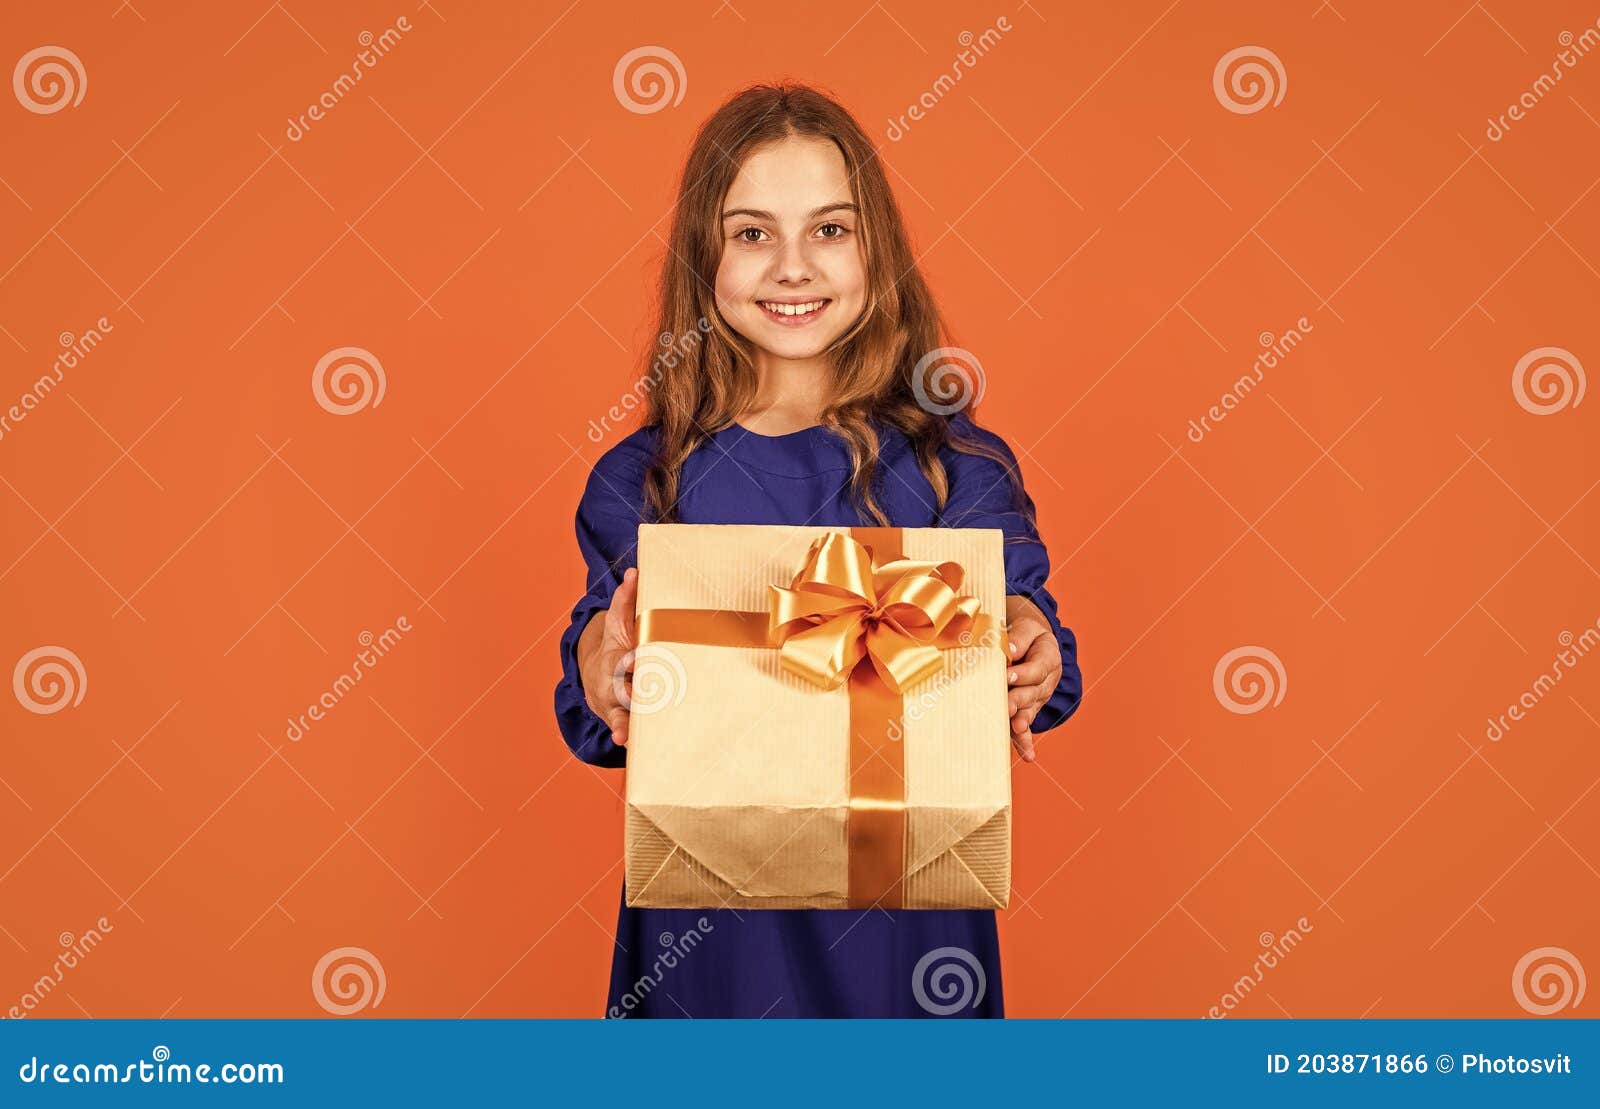 Heart Kraft Paper Candy Box | Kraft Candy Packaging Box | Heart Gift Box  Packaging - Gift Boxes & Bags - Aliexpress